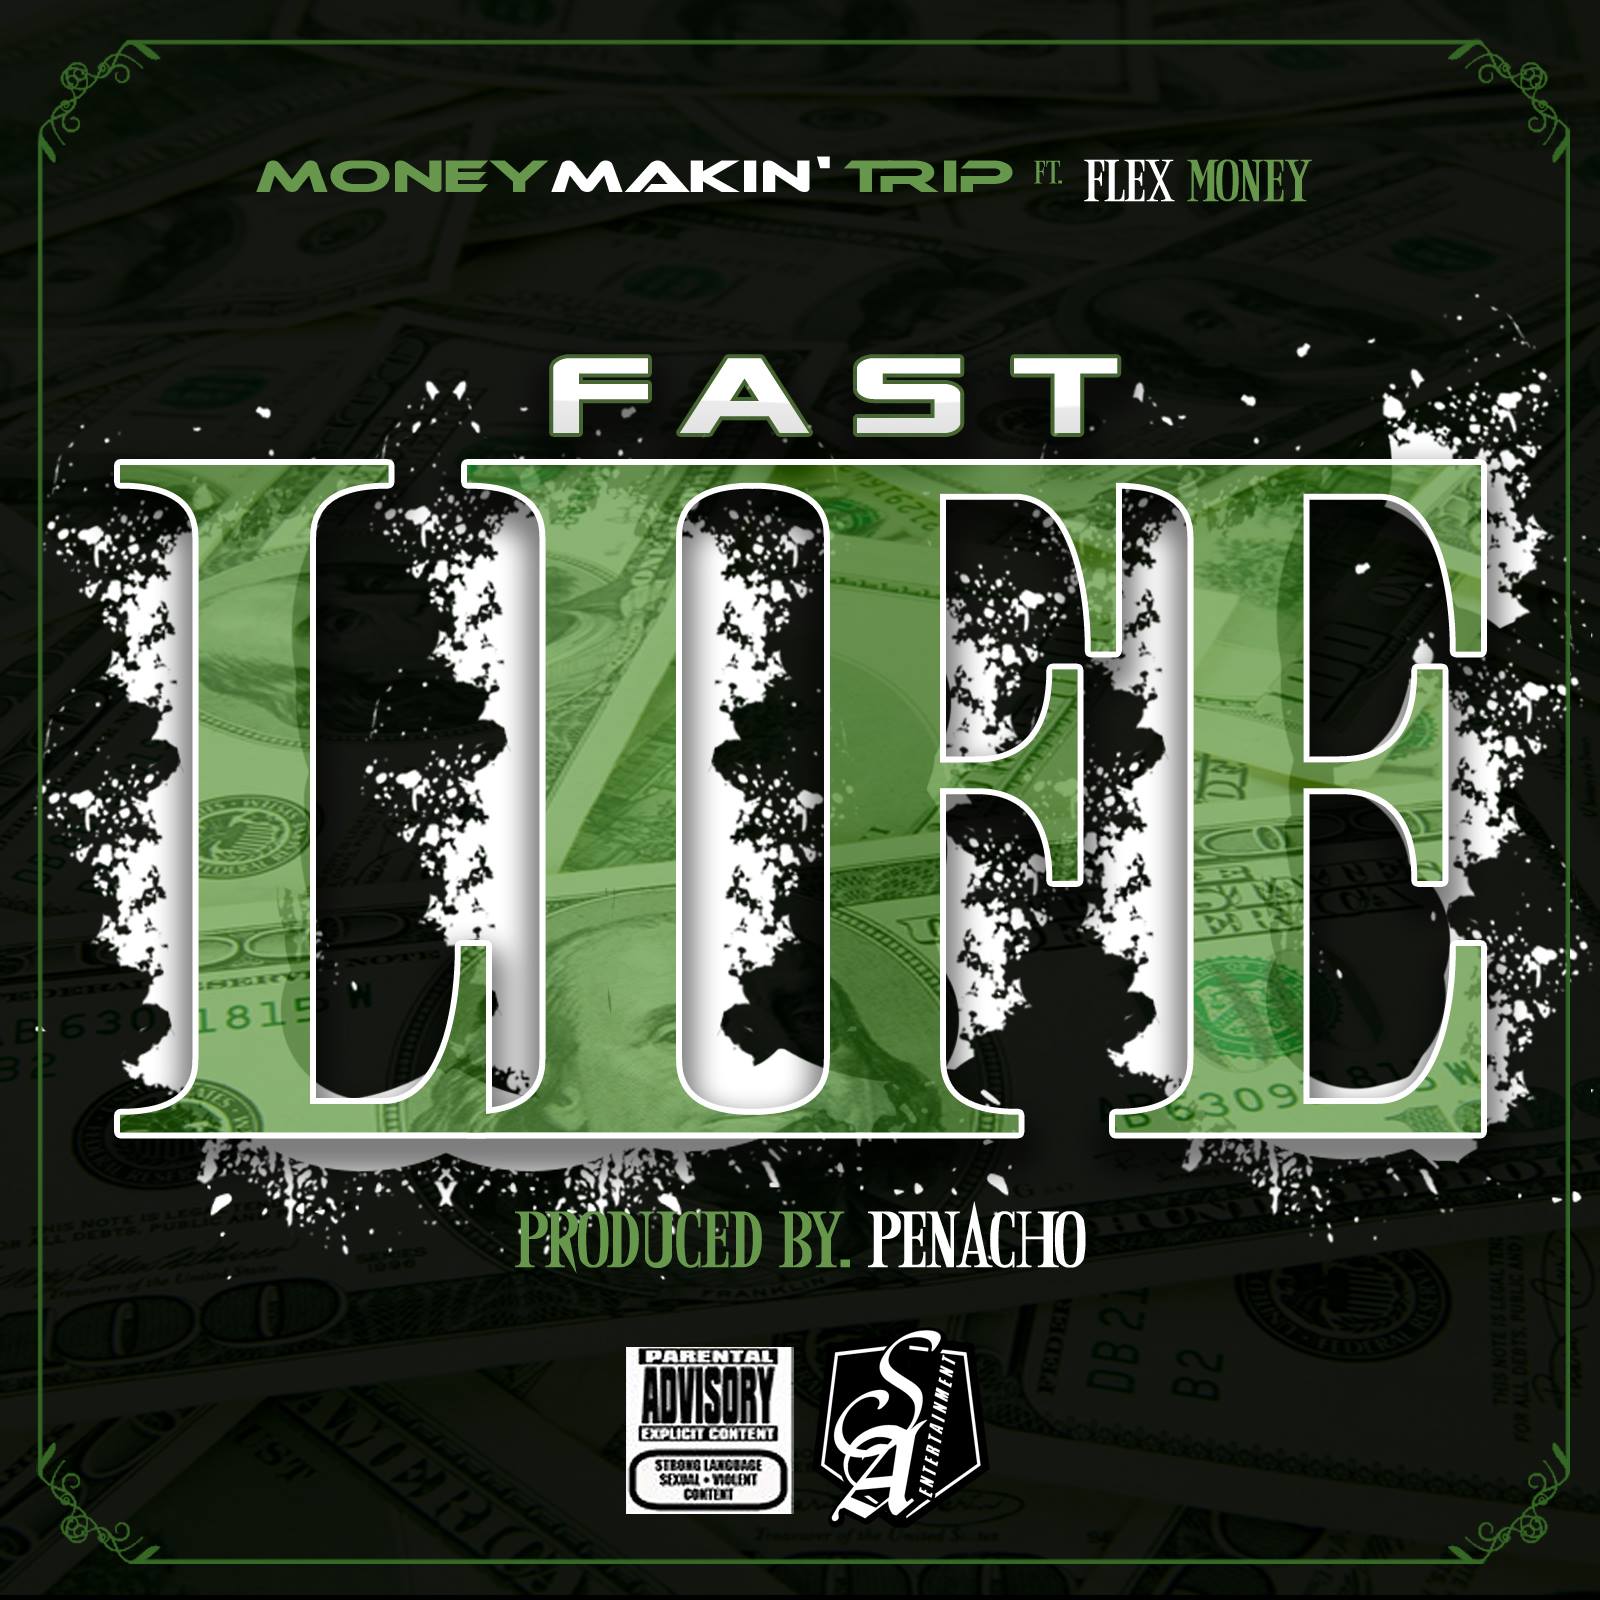 Money Makin' Trip featuring Flex Money - "Fast Money"